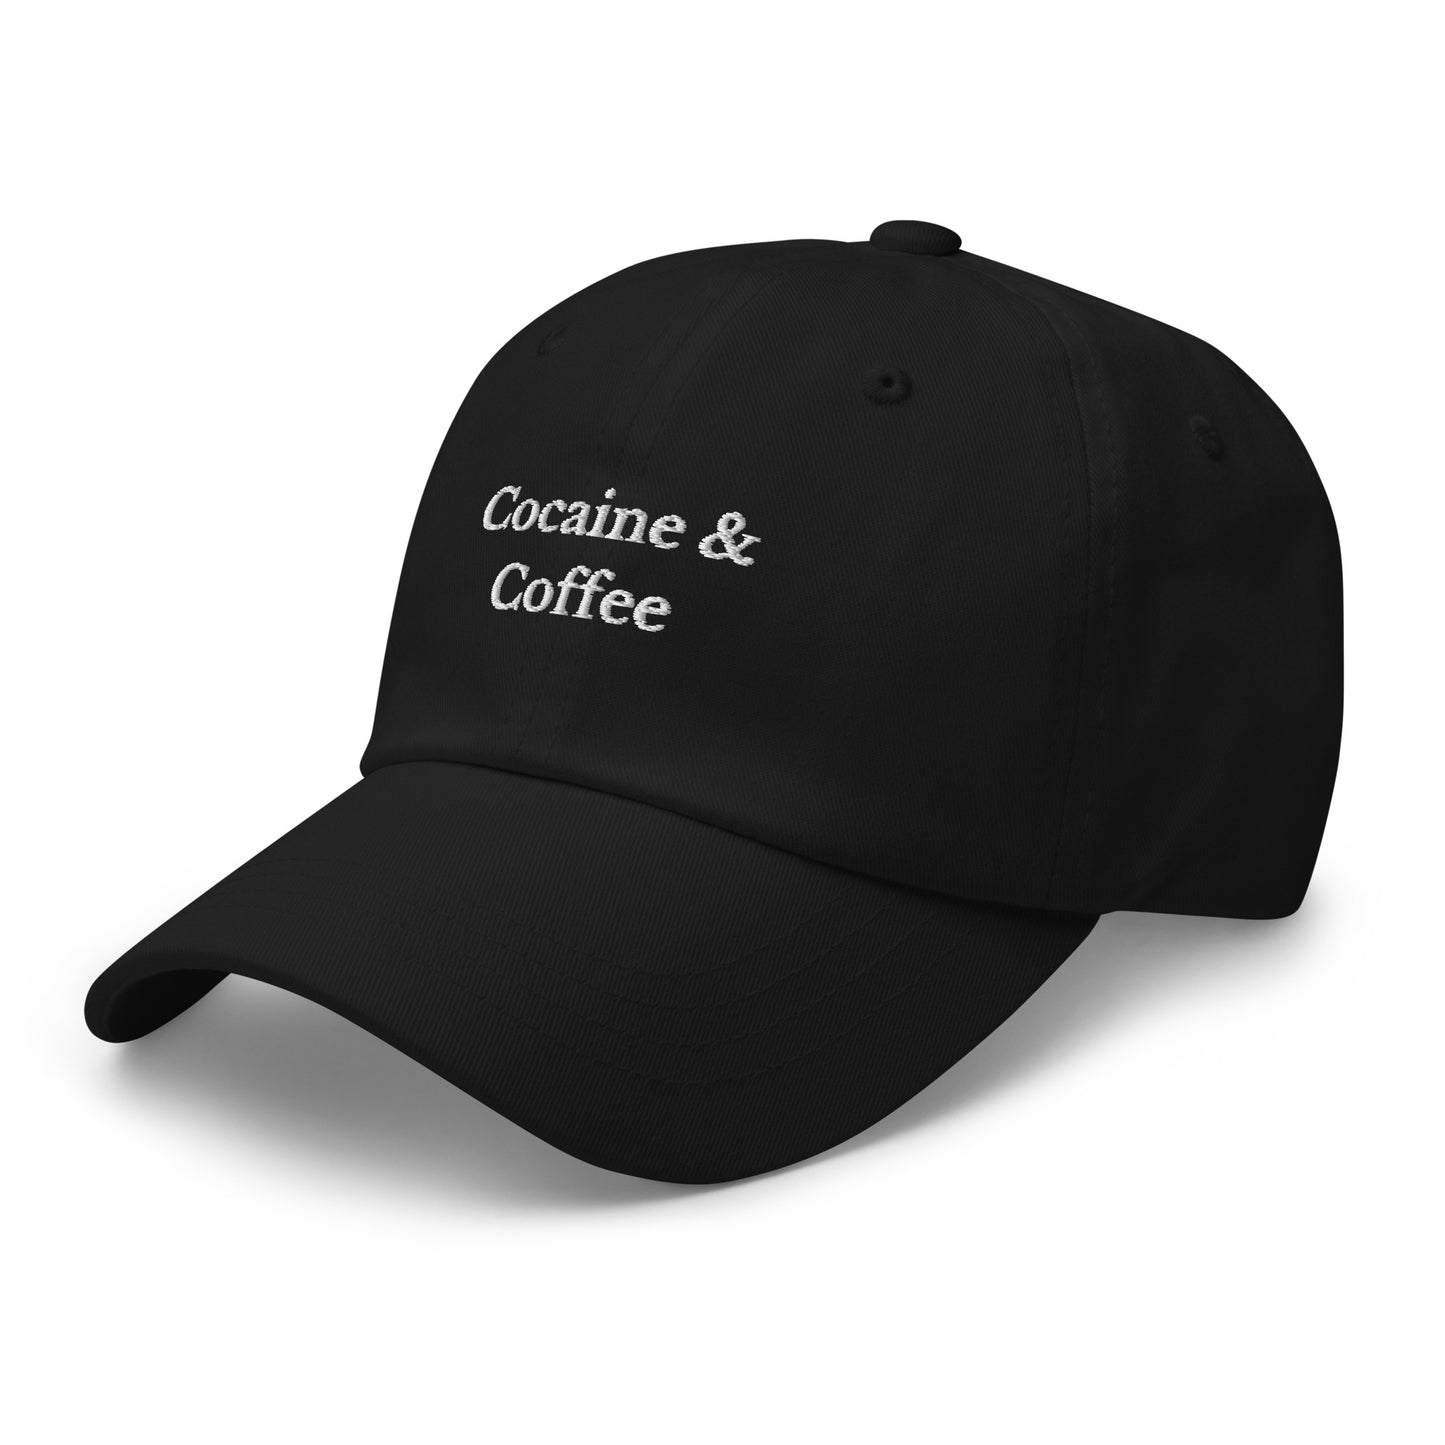 Cocaine & Coffee Cap